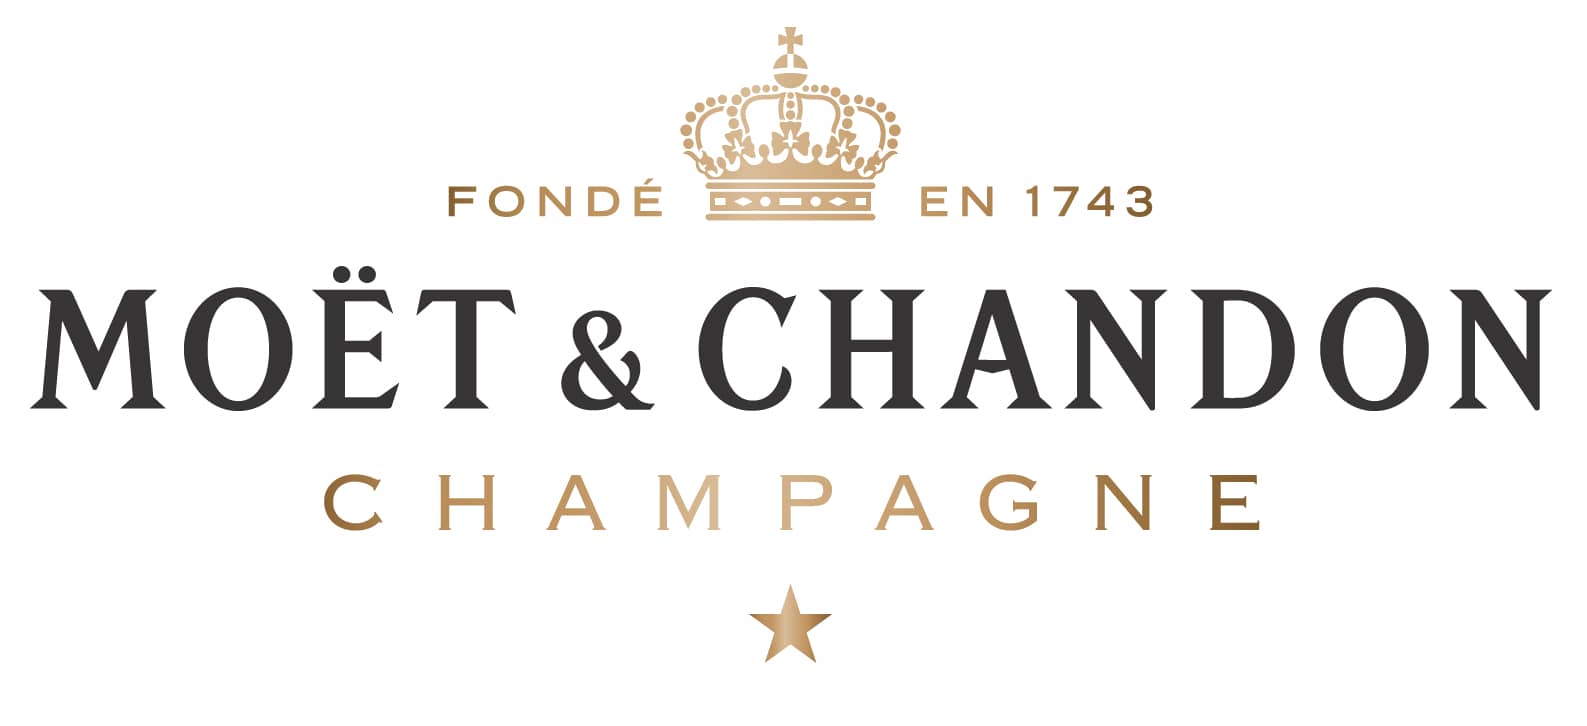 Особливості французького шампанського Moet & Chandon